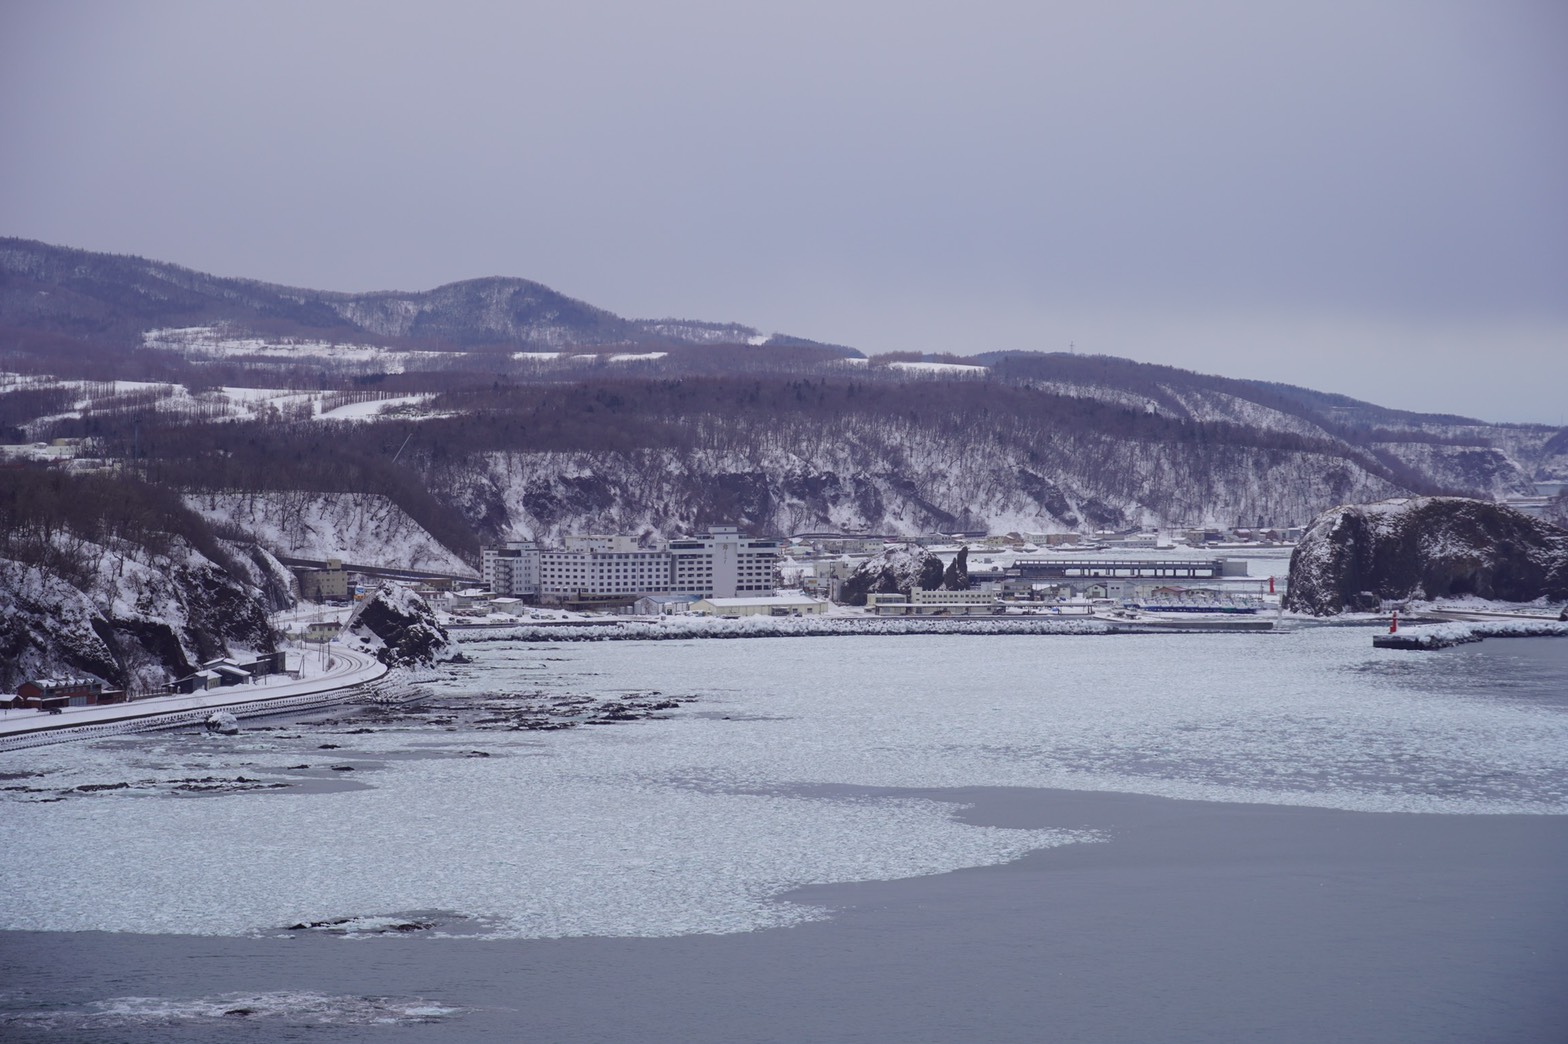 ついに流氷がやってきました 21年1月21日 北海道 世界遺産 北こぶし 知床 ホテル リゾート 公式